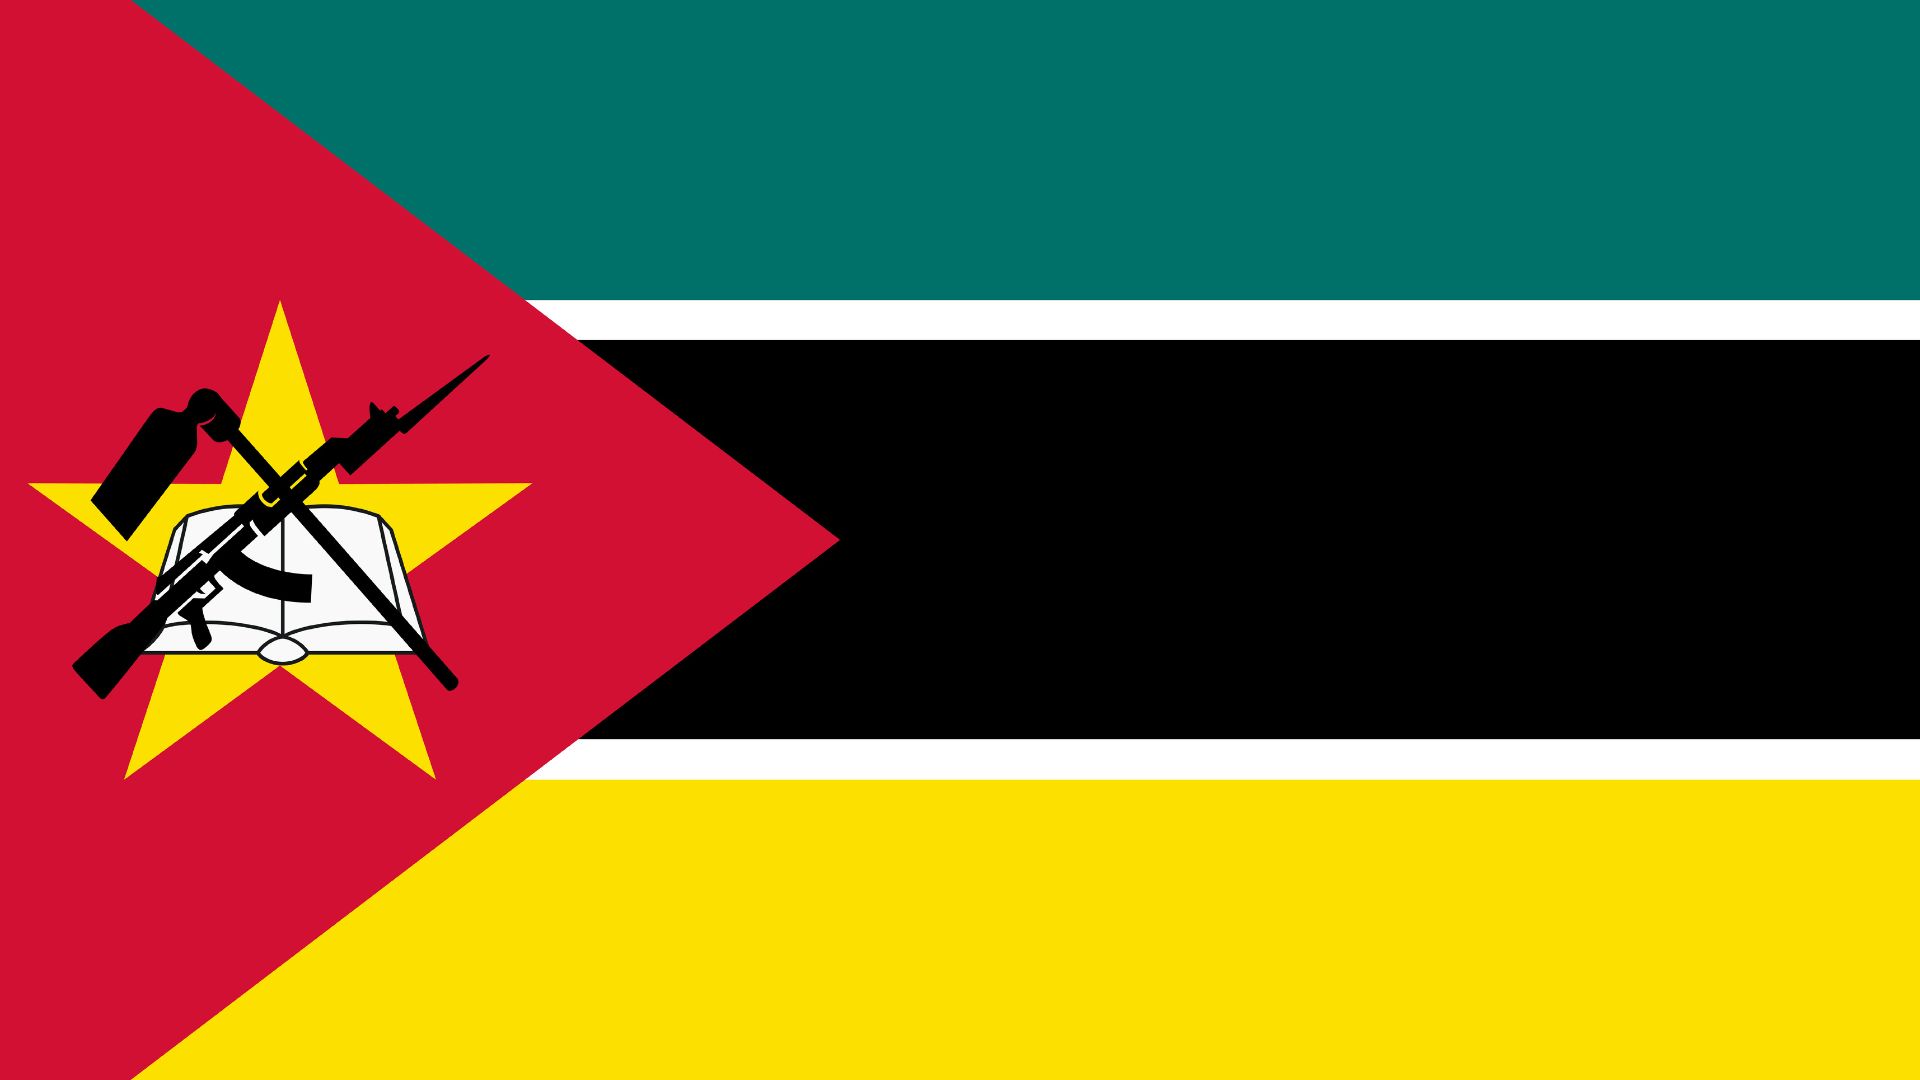 É uma bandeira tricolor (verde, preto e amarelo) com listras brancas e um triângulo vermelho.  A corde verde-azulado representa as riquezas da terra, as bordas brancas significam a paz, o preto representa o continente africano, o amarelo simboliza os minerais do país e o vermelho representa a luta pela independência